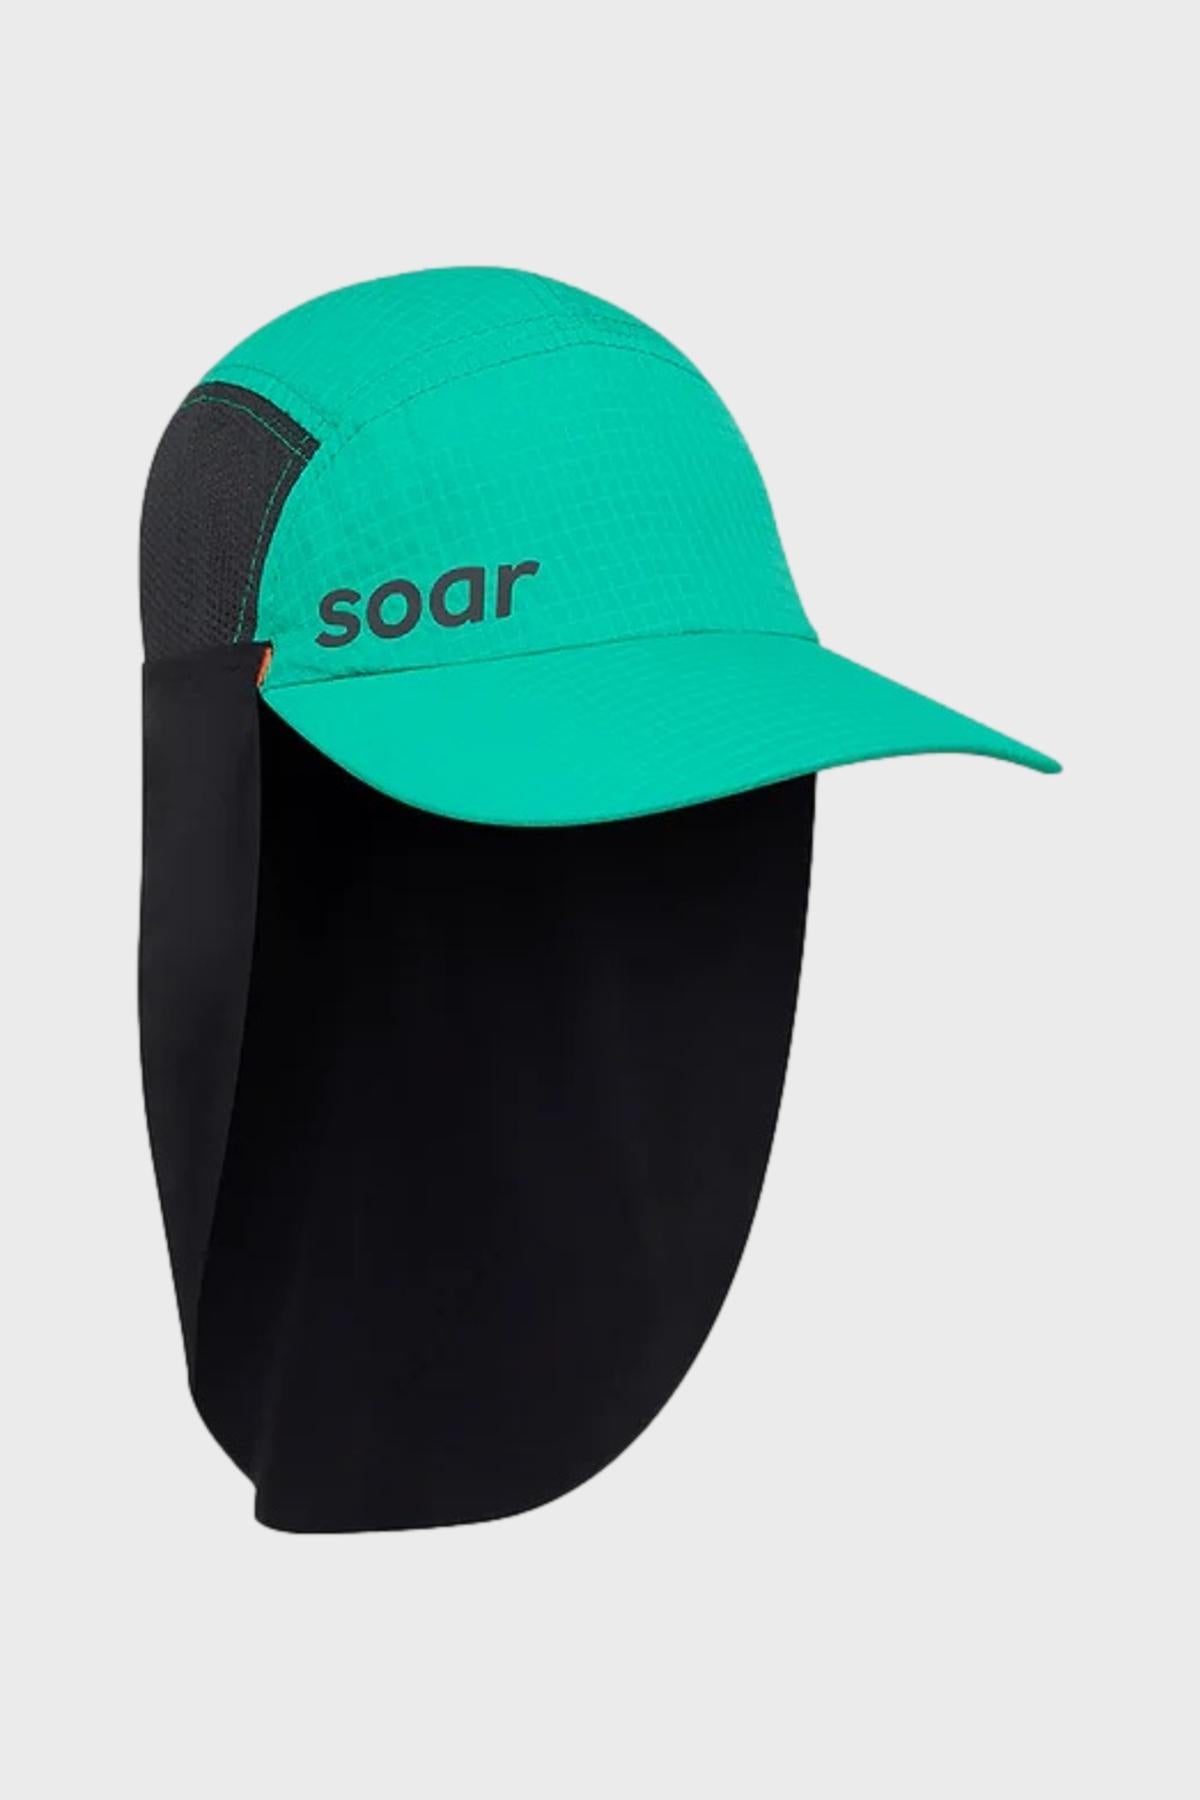 SOAR - SAHARA CAP